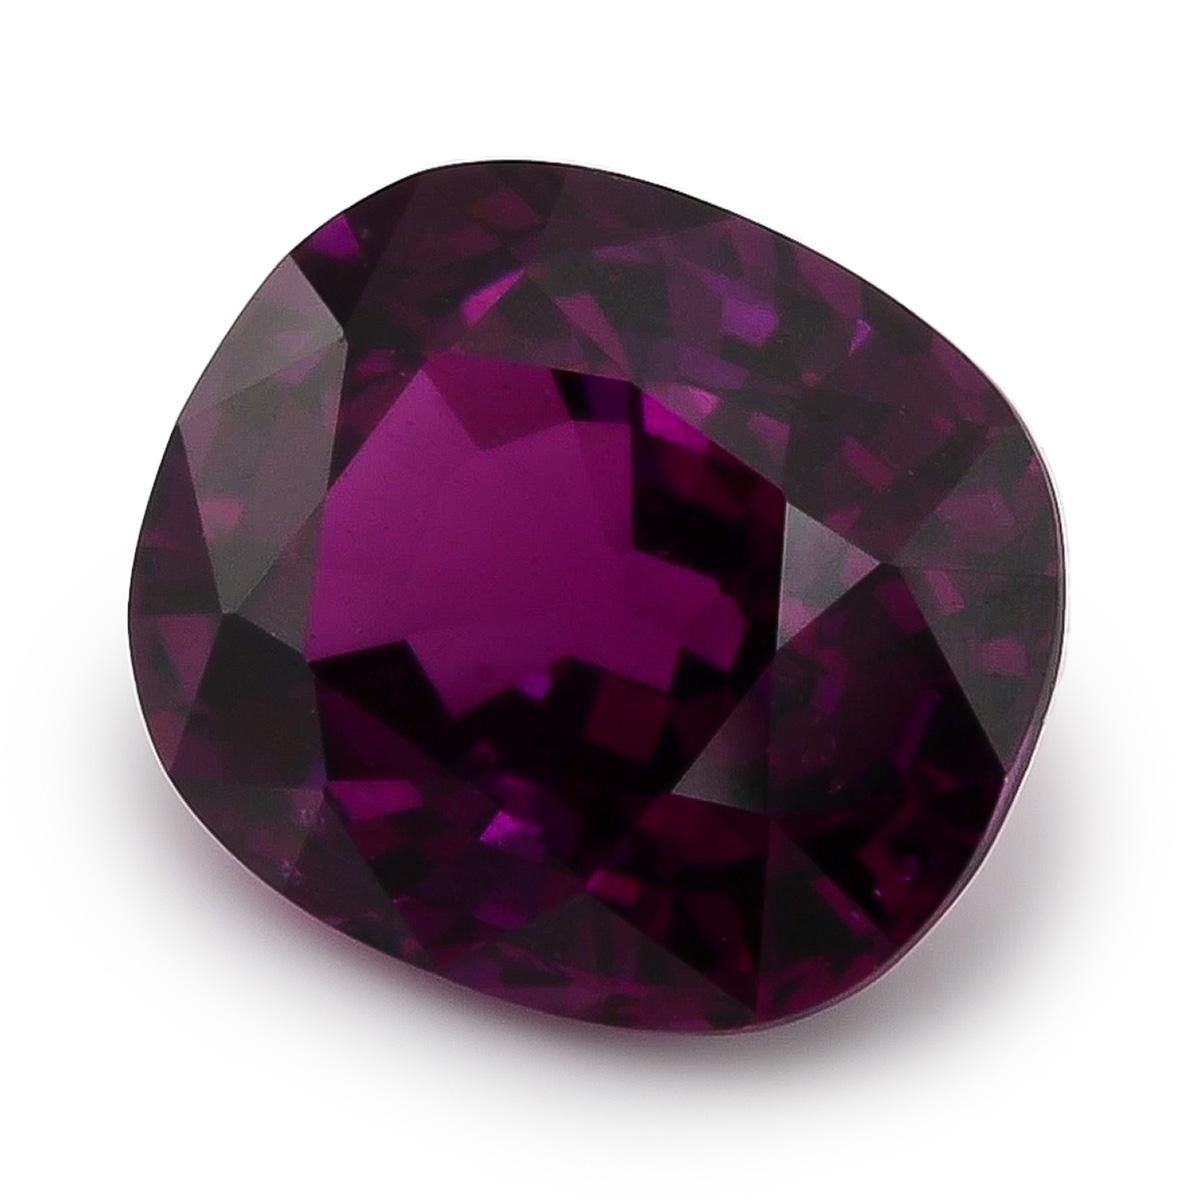 Plongez dans le monde enchanteur des pierres précieuses avec le grenat violet naturel de 5,06 carats du Mozambique. Cette superbe gemme présente une forme de grenat unique et mesure 10,74 x 9,04 x 6,03 mm, ce qui révèle sa qualité exceptionnelle.